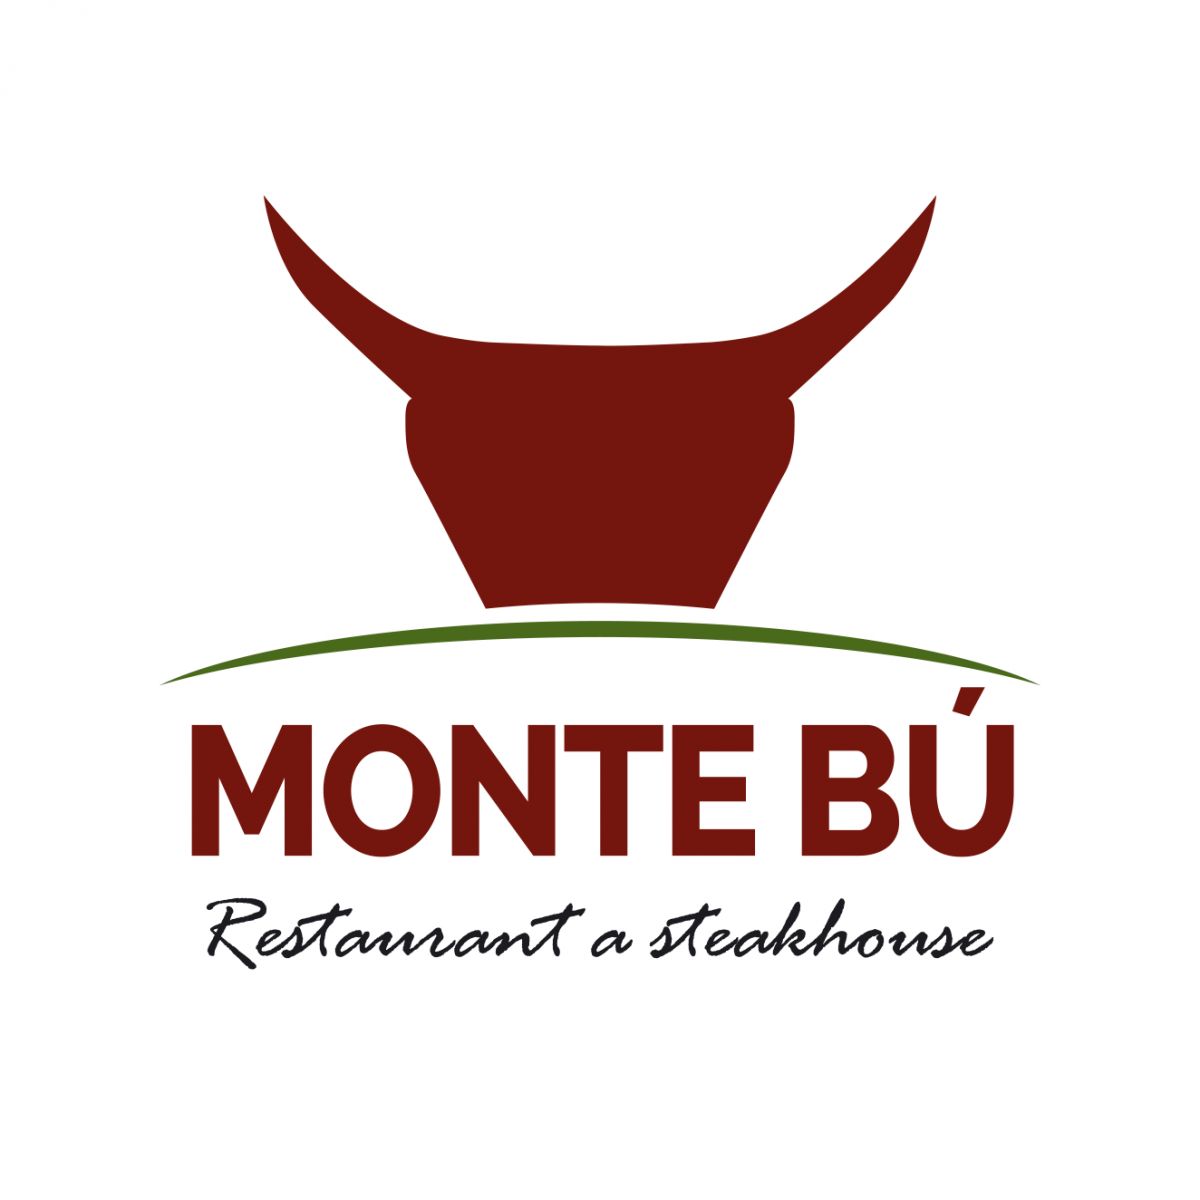 Monte Bú